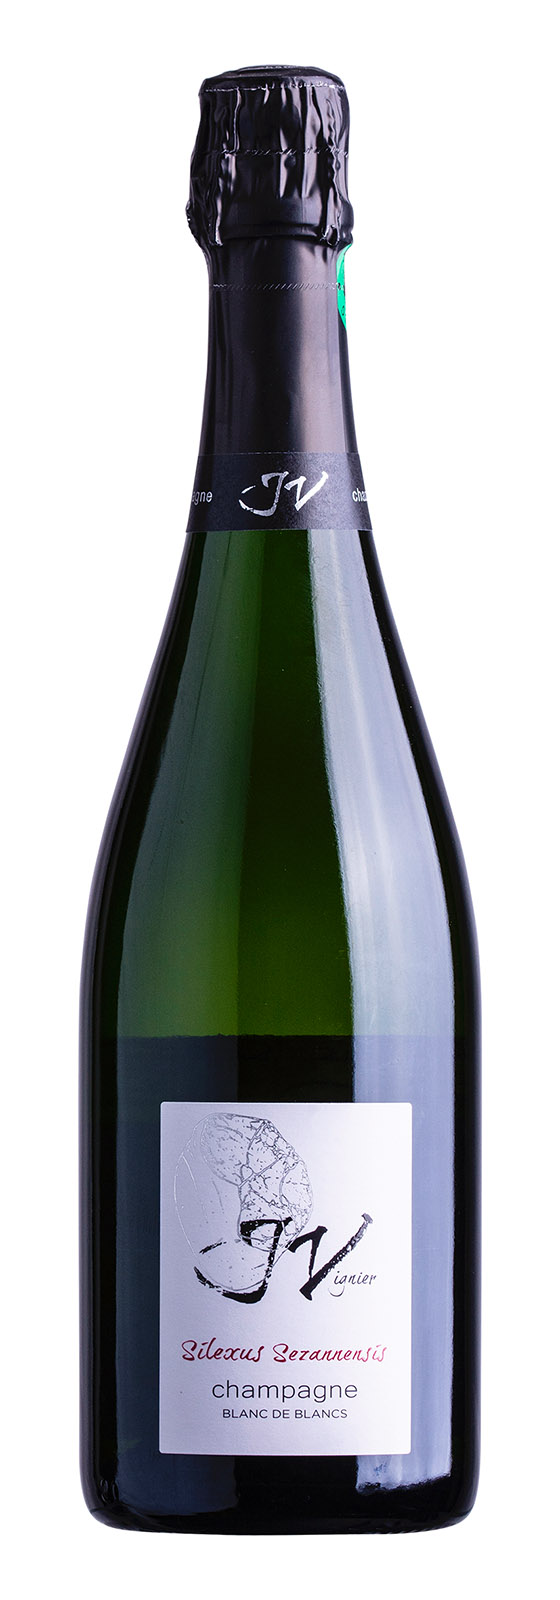 Champagne AOC Silexus Sezannensis Brut 0